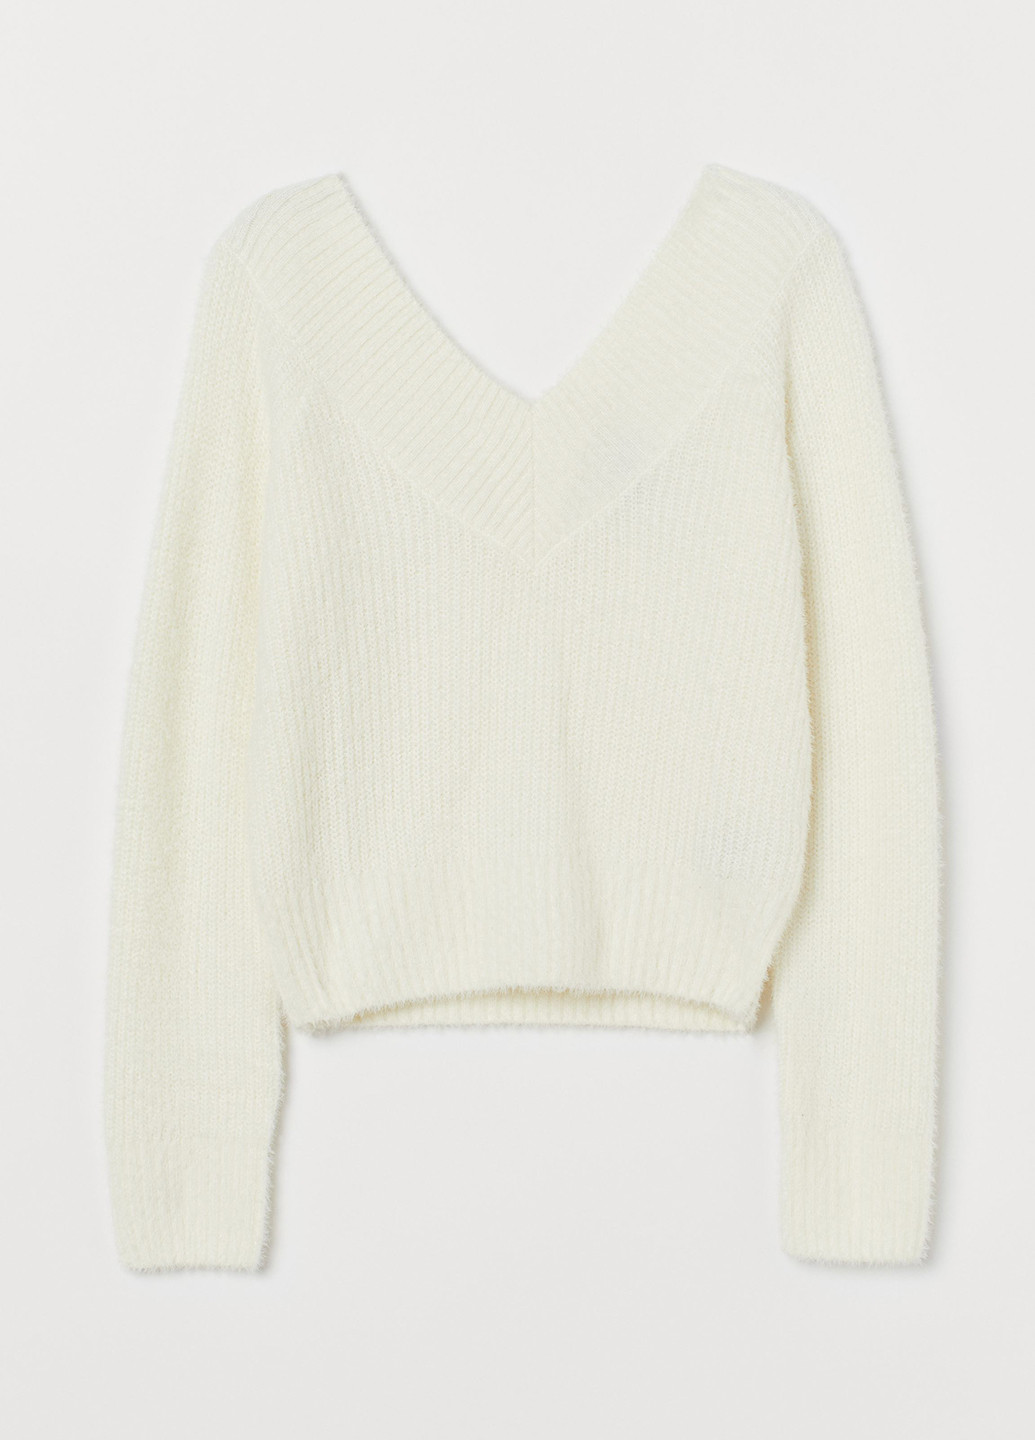 Белый зимний пуловер пуловер H&M